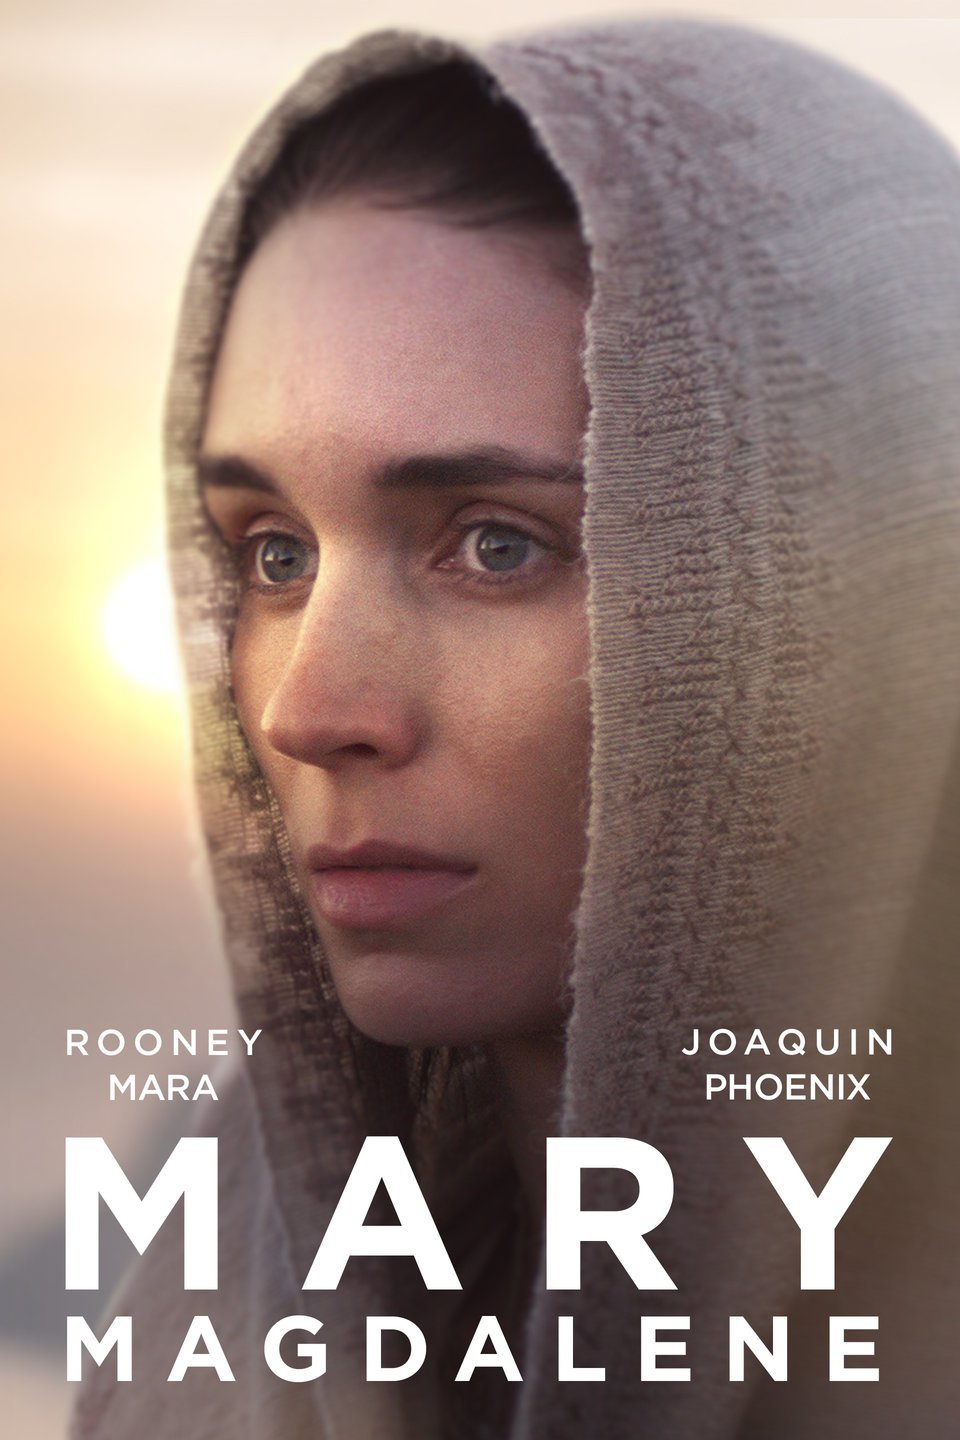 [ฝรั่ง] Mary Magdalene (2018) แมรี่แม็กดาลีน [1080p] [พากย์อังกฤษ DTS] [Soundtrack บรรยายไทย] [เสียงอังกฤษ + ซับไทย] [ONE2UP]